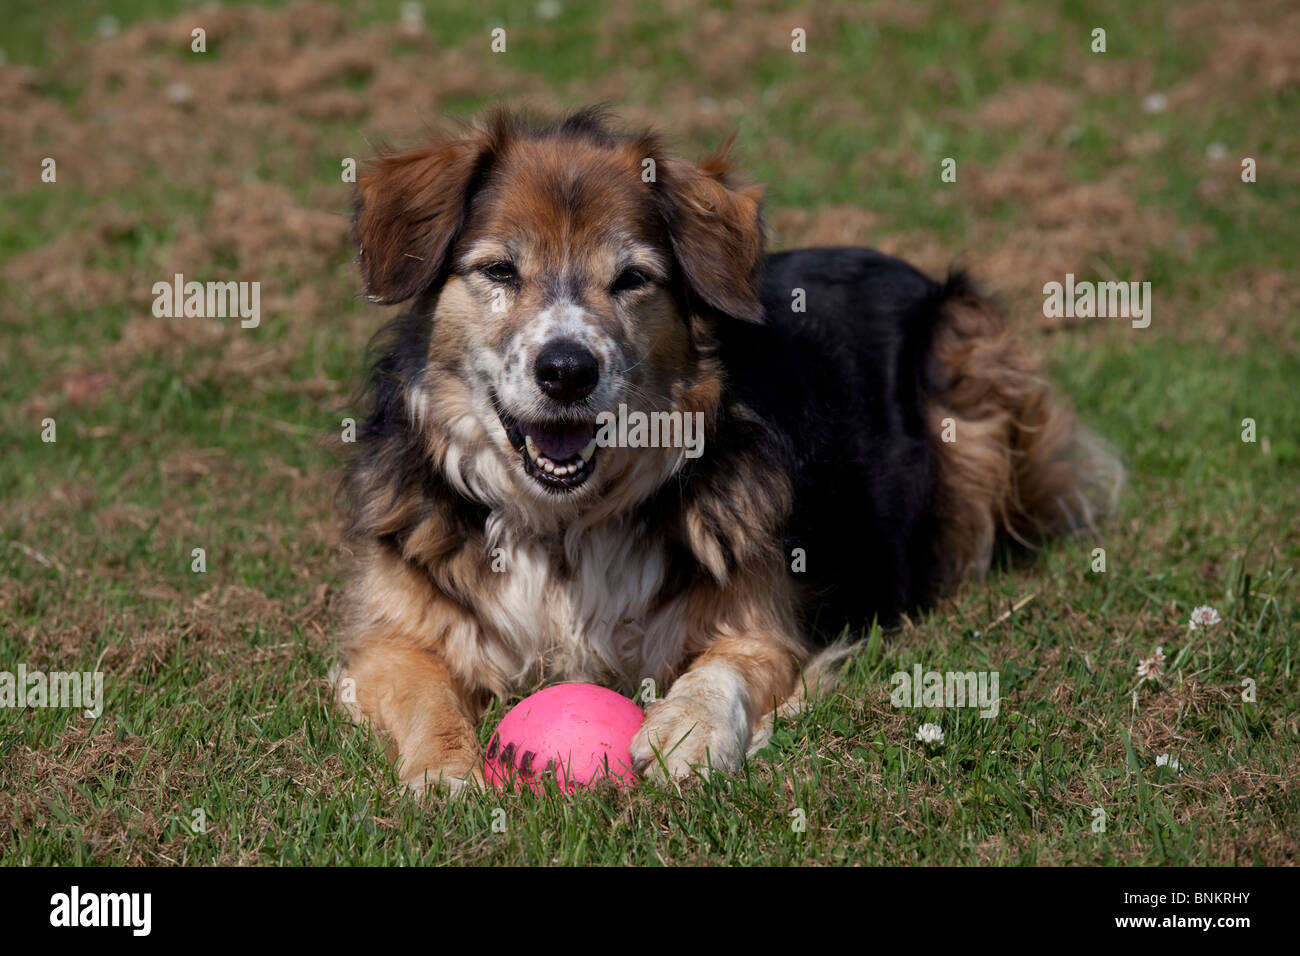 Elderly brown sheep dog with ball Tara UK Stock Photo